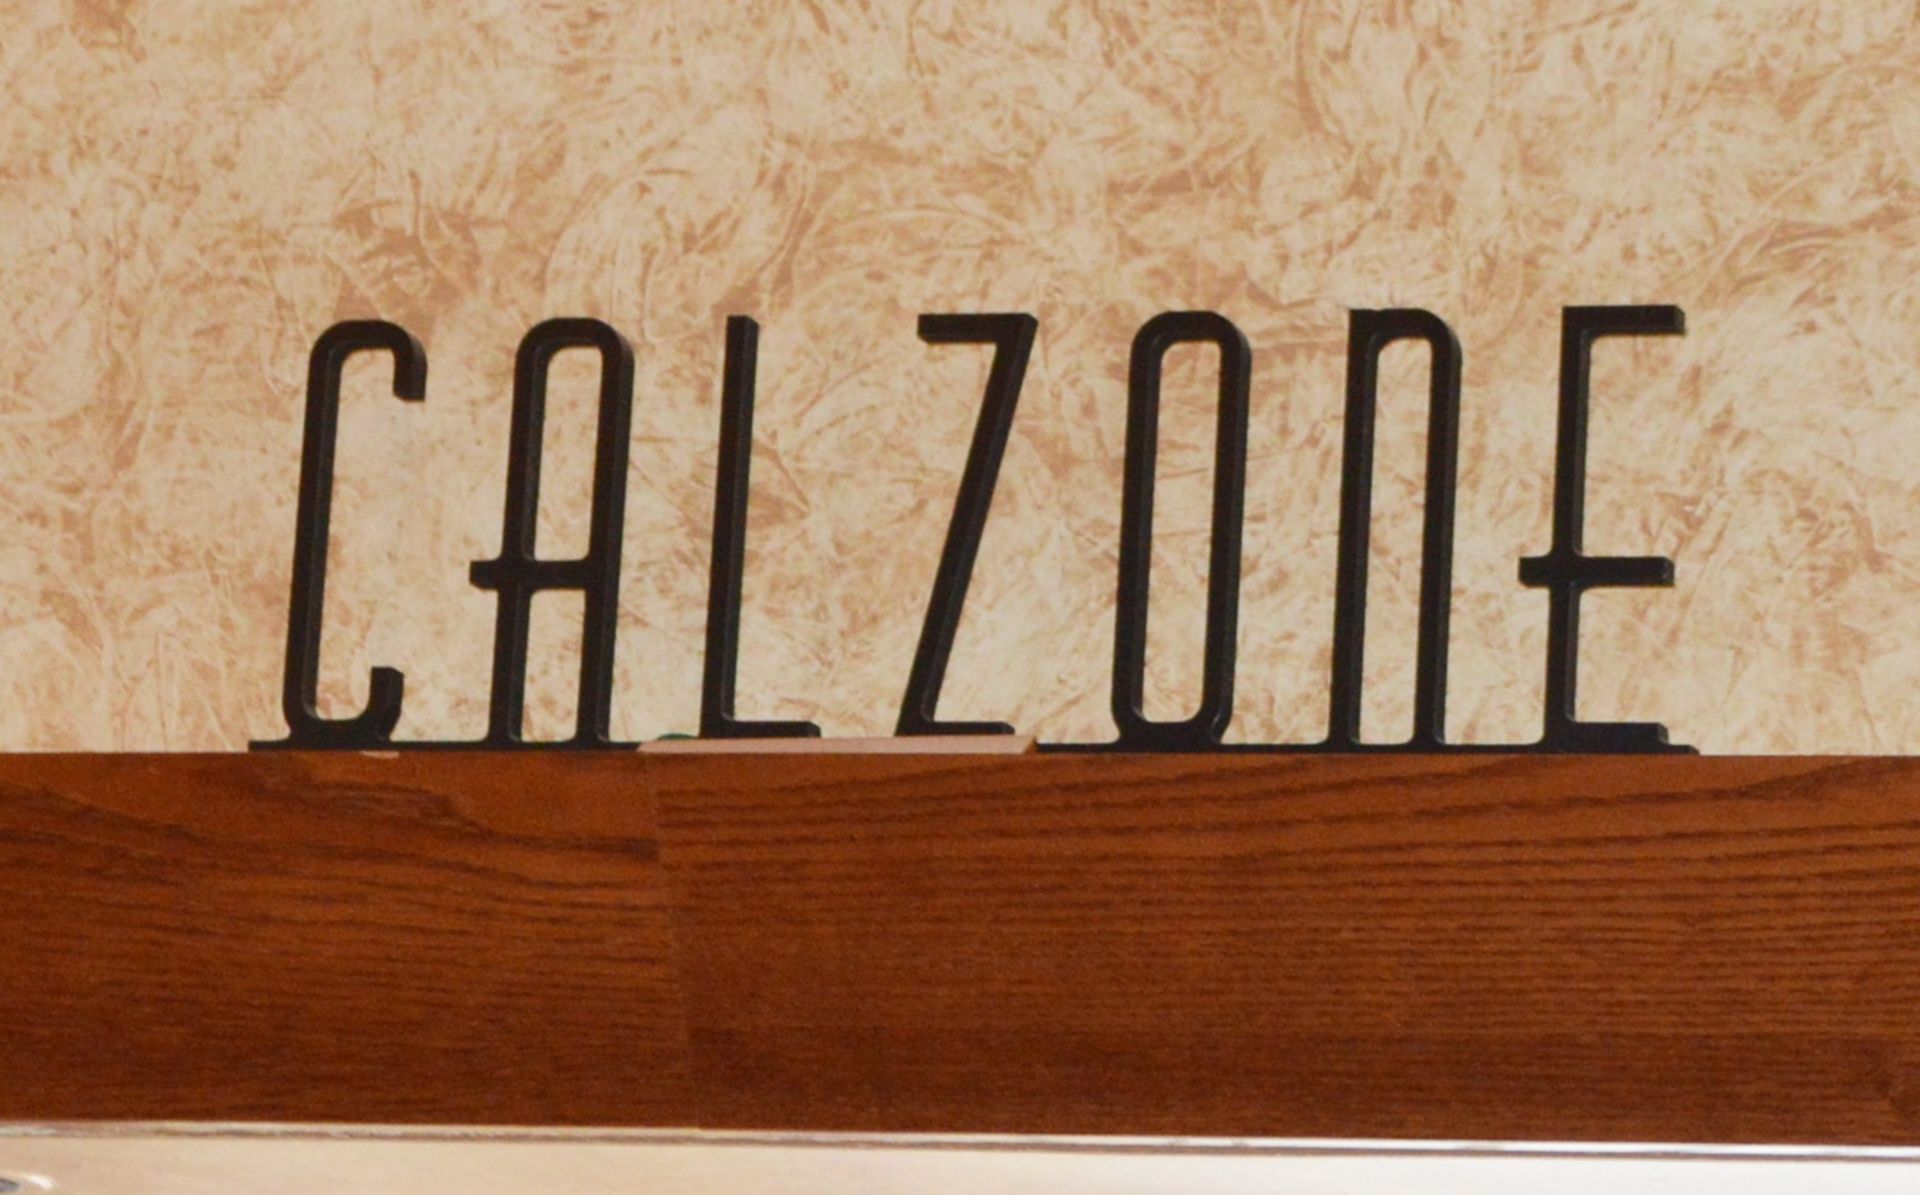 7 x Wooden Signs Suitable For Restaurants, Cafes, Bistros etc - Includes Pasta, Lasagne,